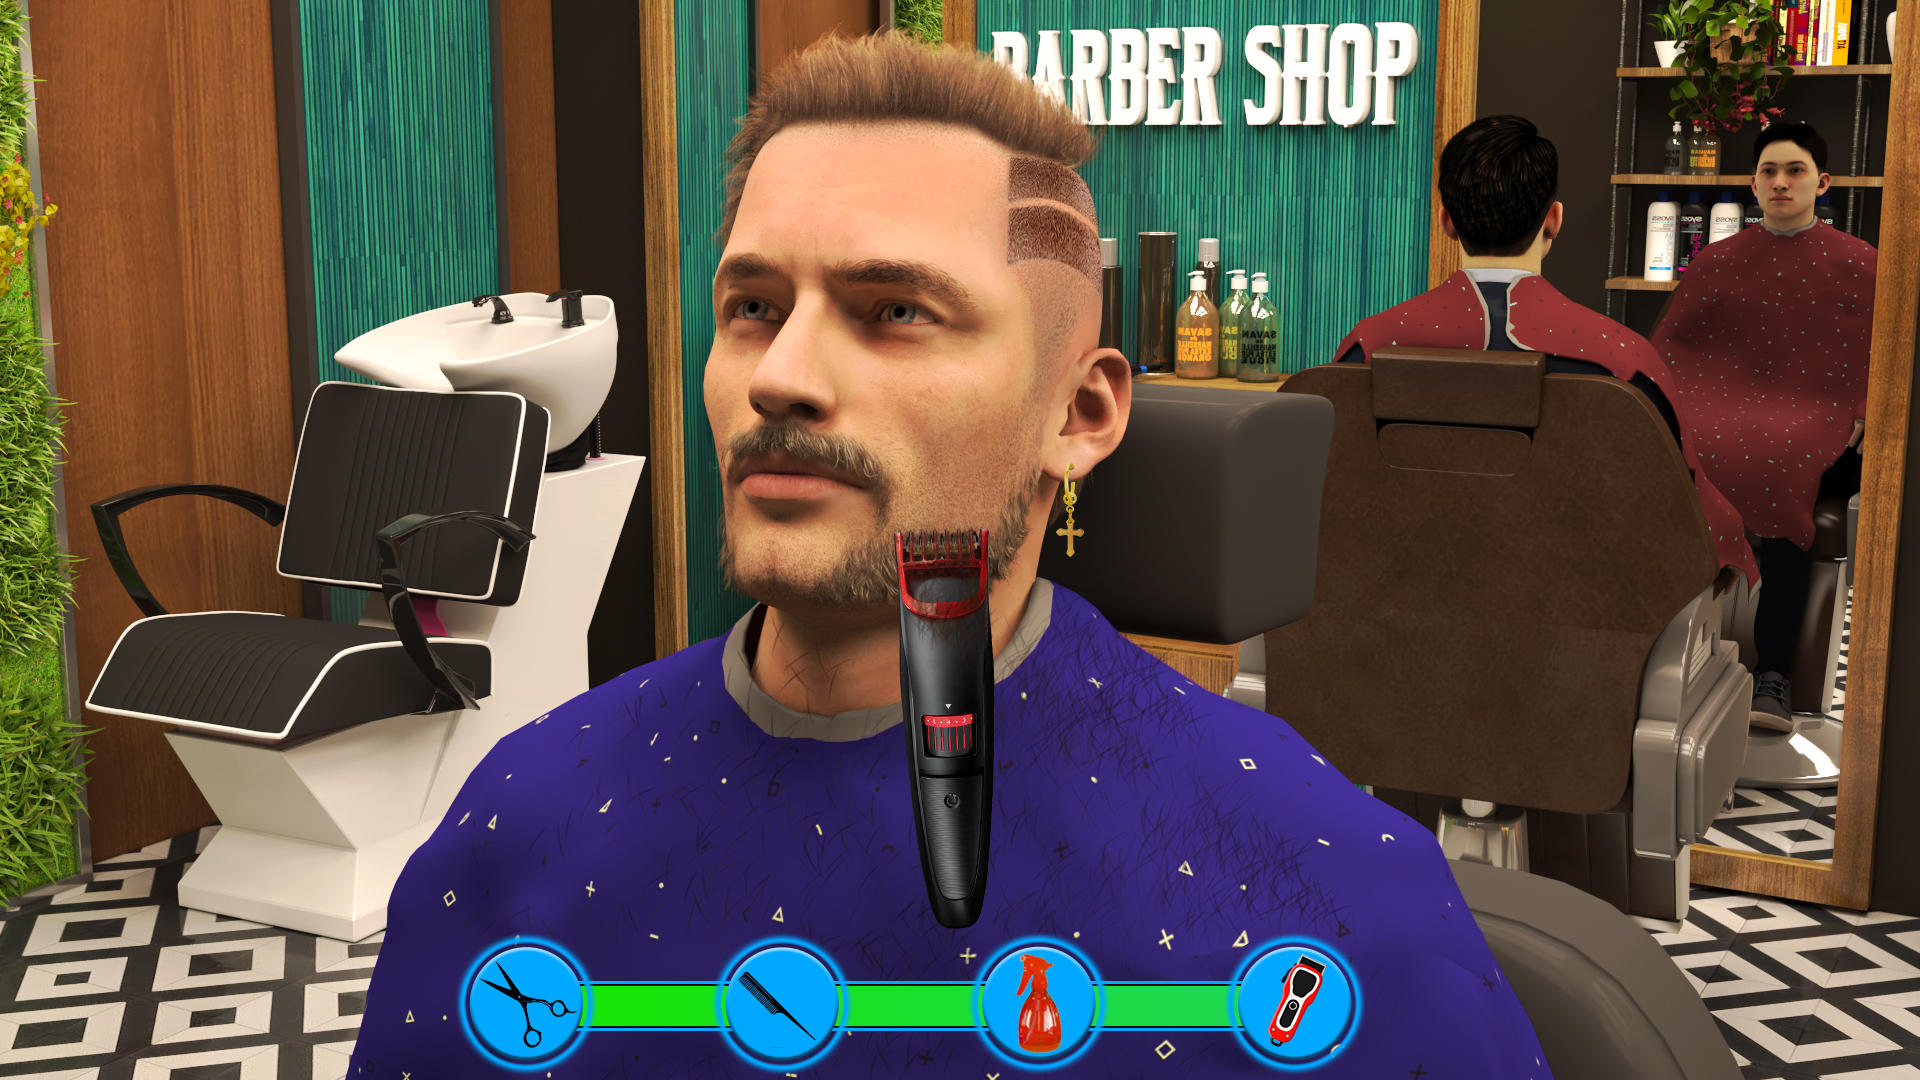 Screenshot 1 of Barbearia: jogos de simulação de corte de cabelo 1.0